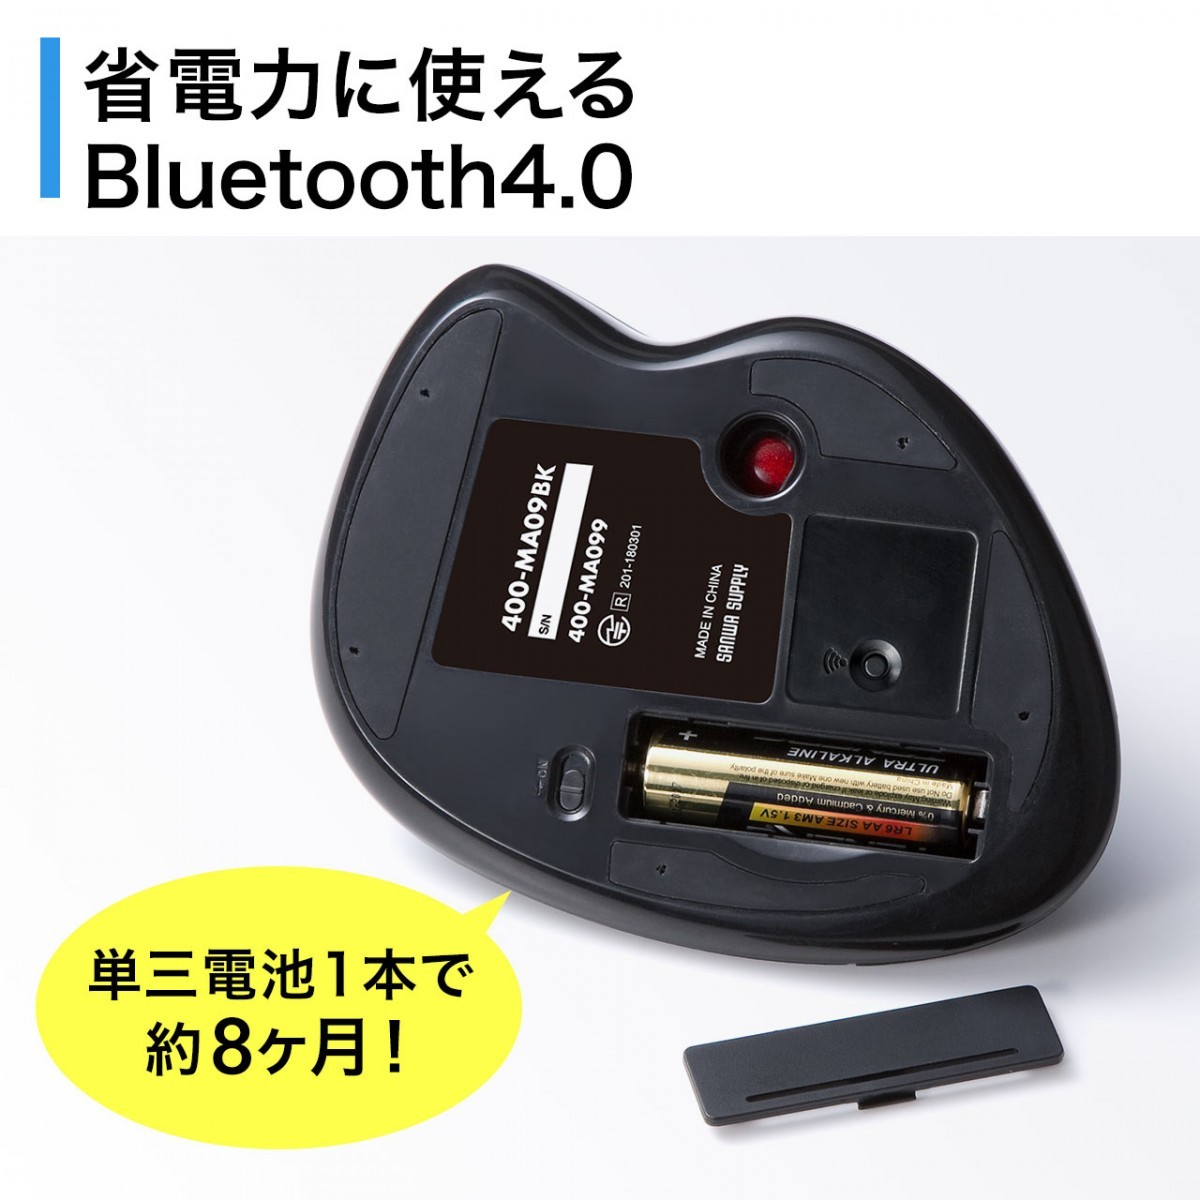 トラックボール マウス Bluetooth エルゴノミクス レーザーセンサー 5ボタン 戻る進む カウント数切り替え チルトホイール 400-MA099